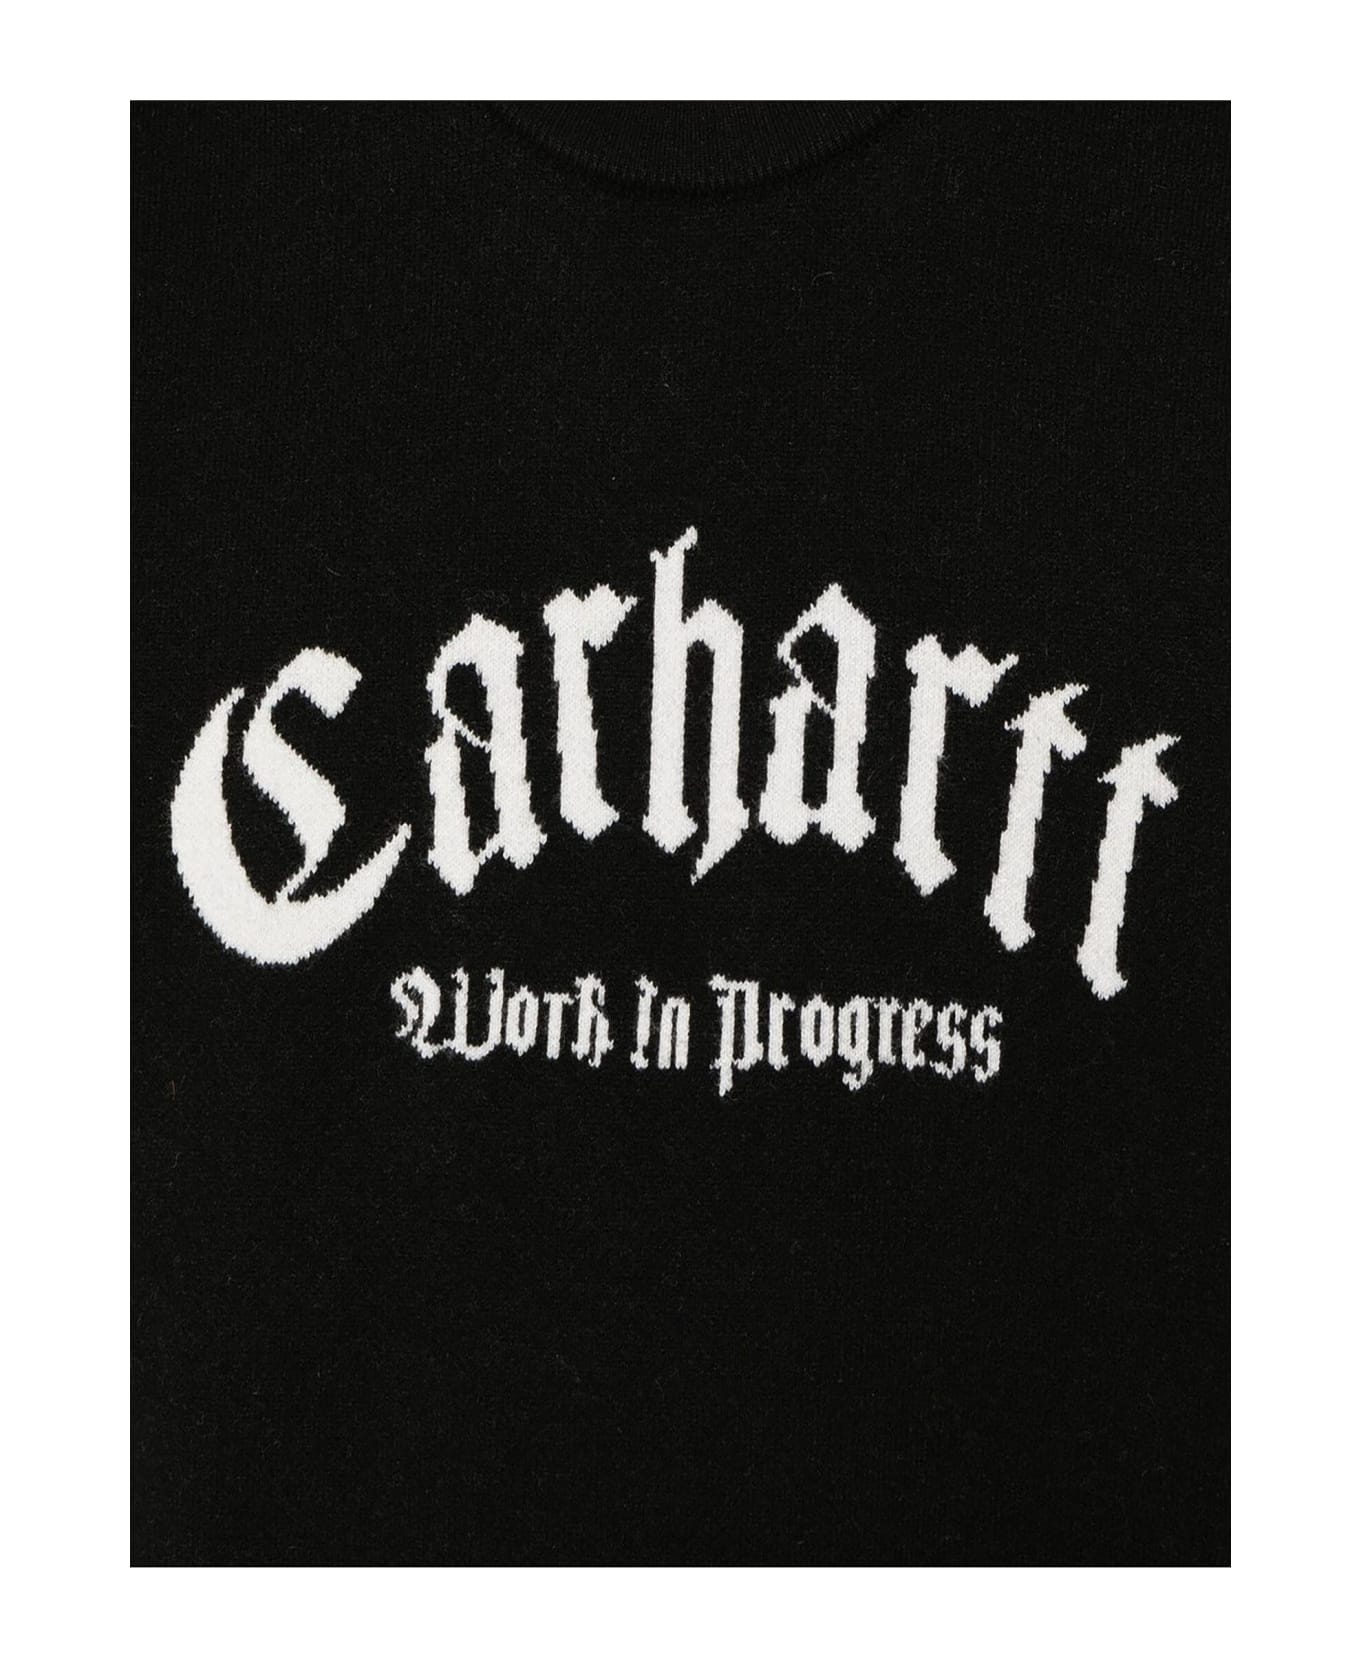 Carhartt Sweaters Black - Black フリース